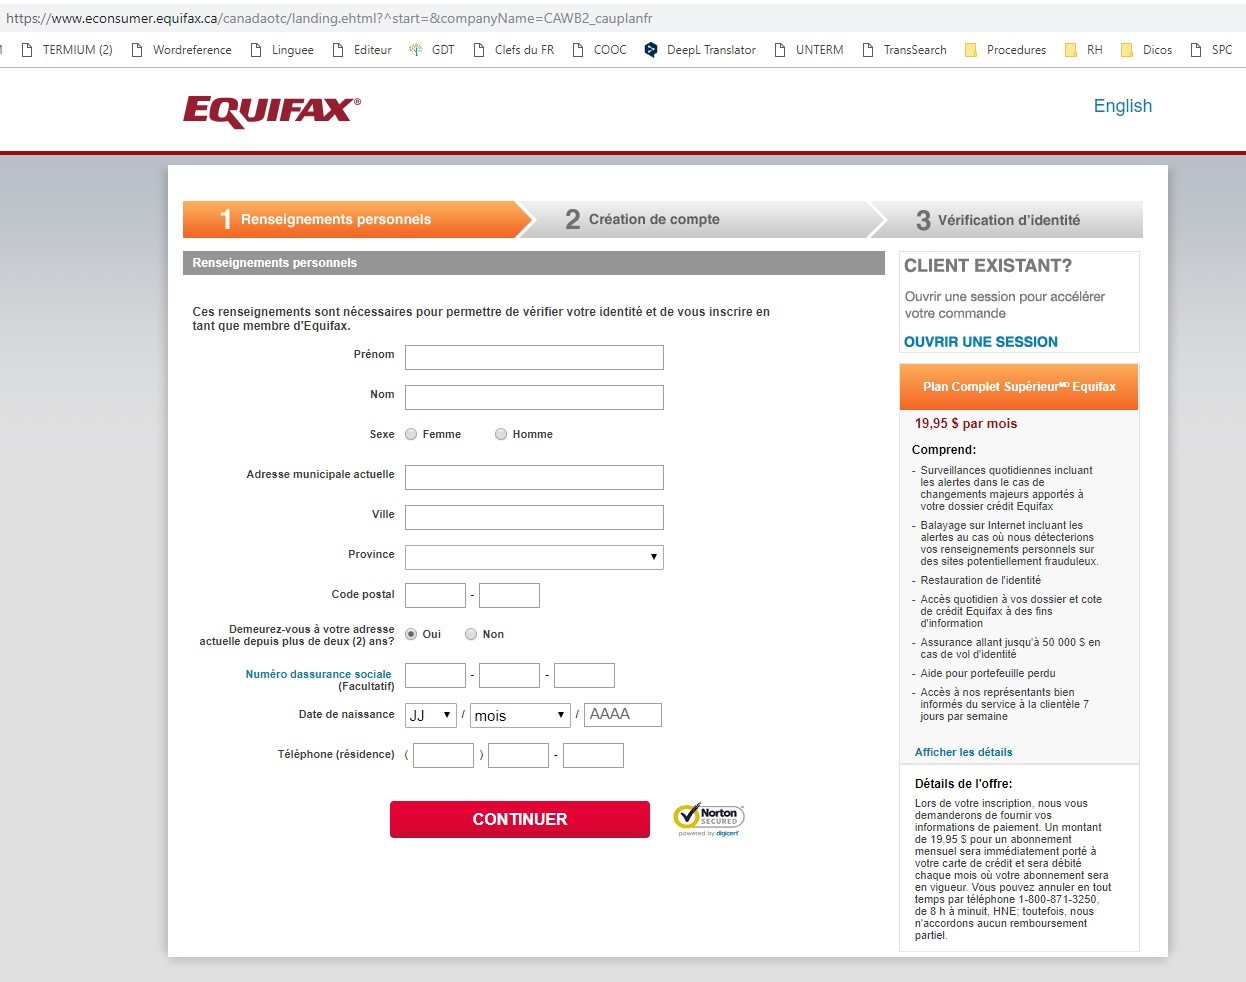 Figure 2. Une capture d’écran du portail GCS d’Equifax sur le site Equifax.ca, tel que décrit au paragraphe 102.